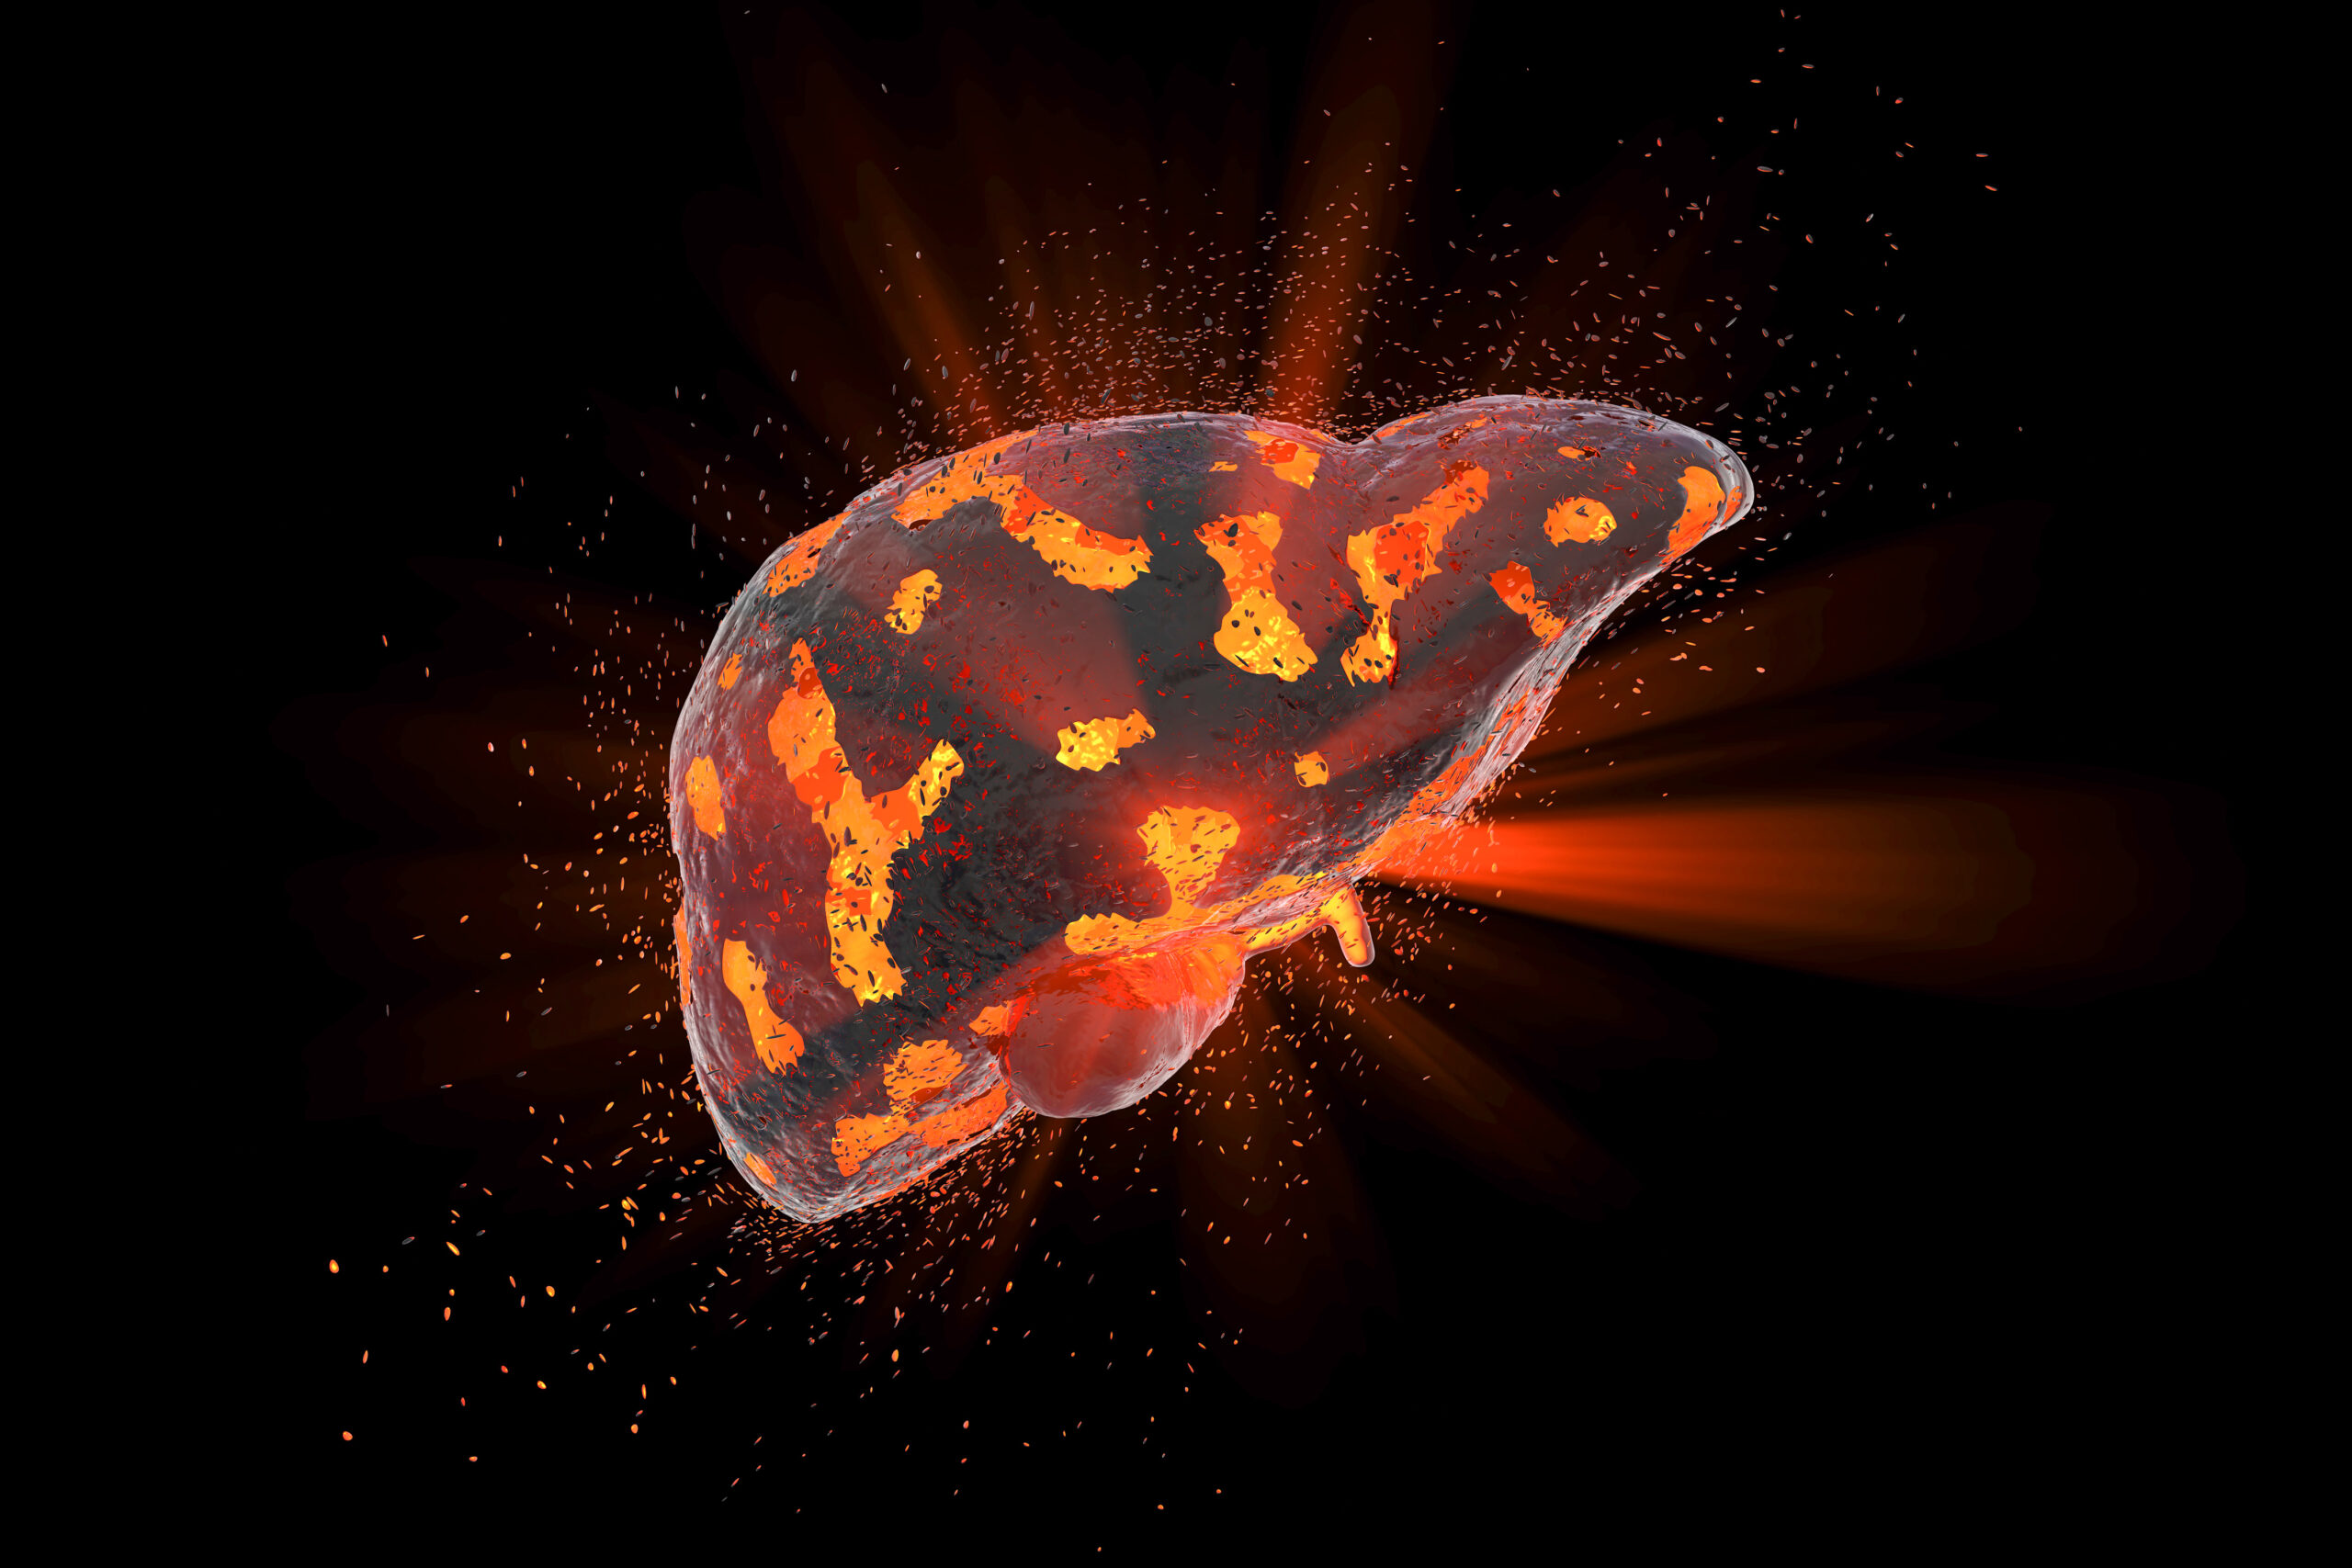 Imagem de um fígado